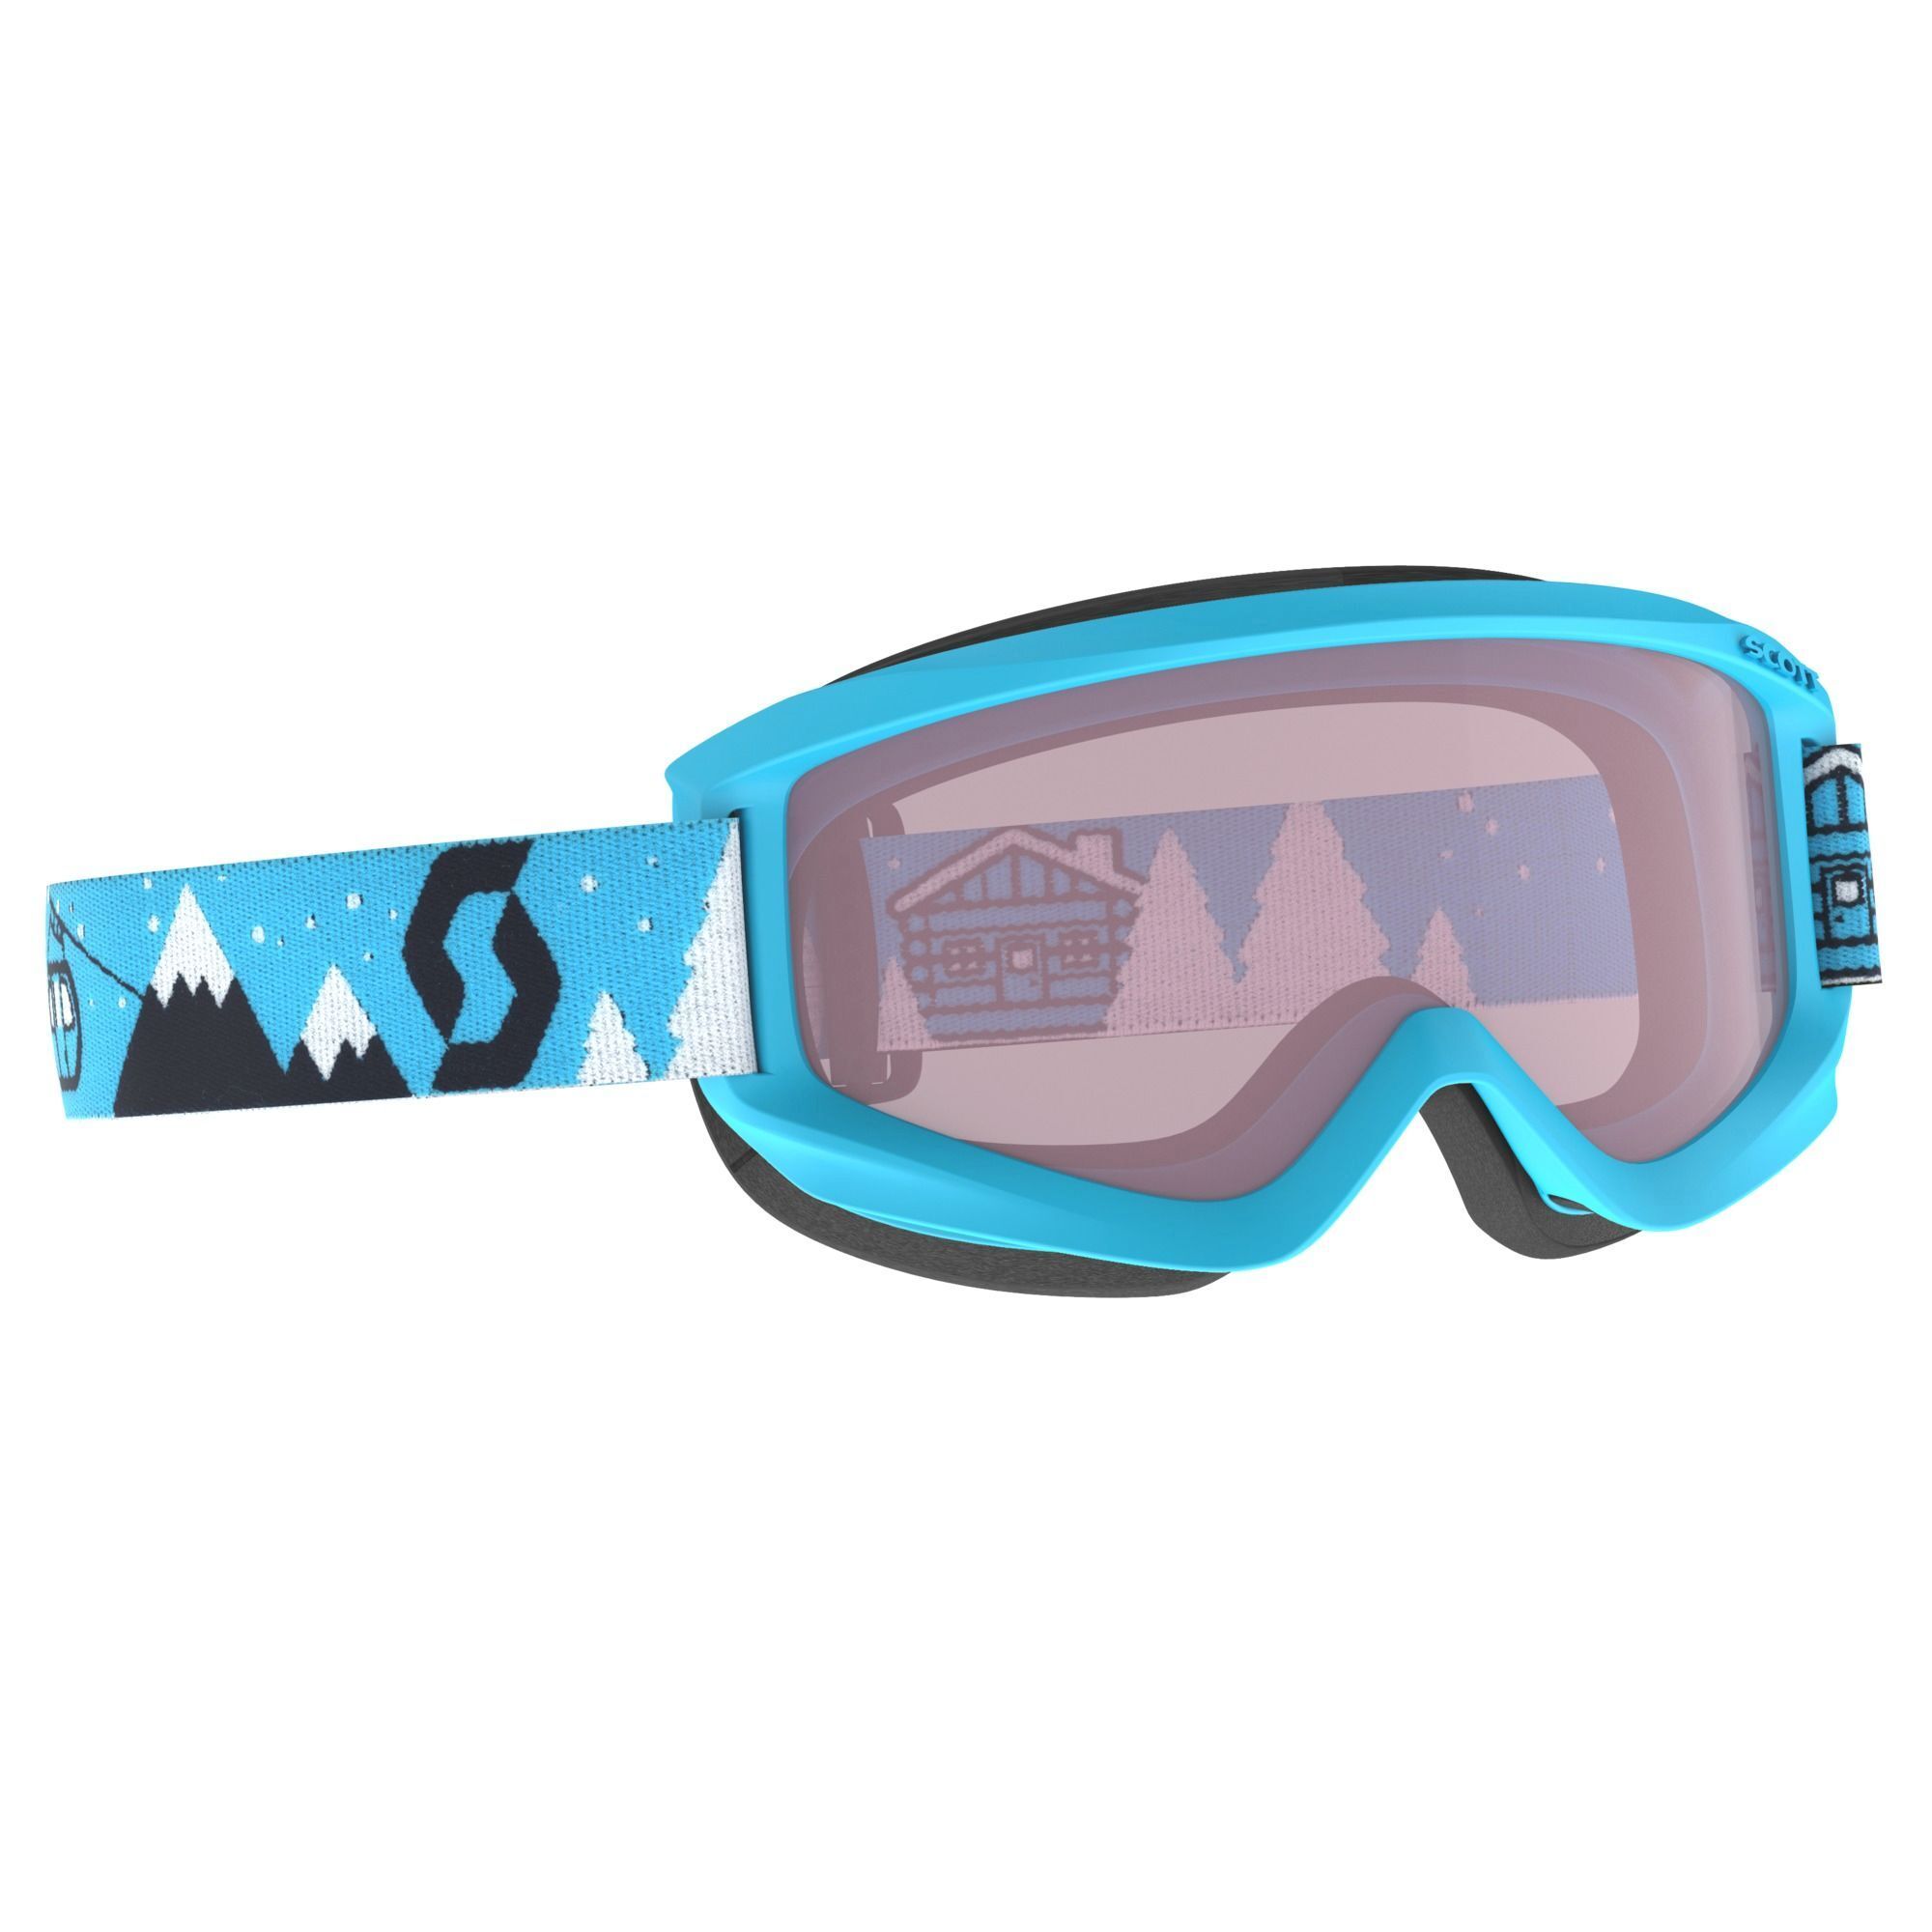 Scott Agent - Ski goggles - Kids